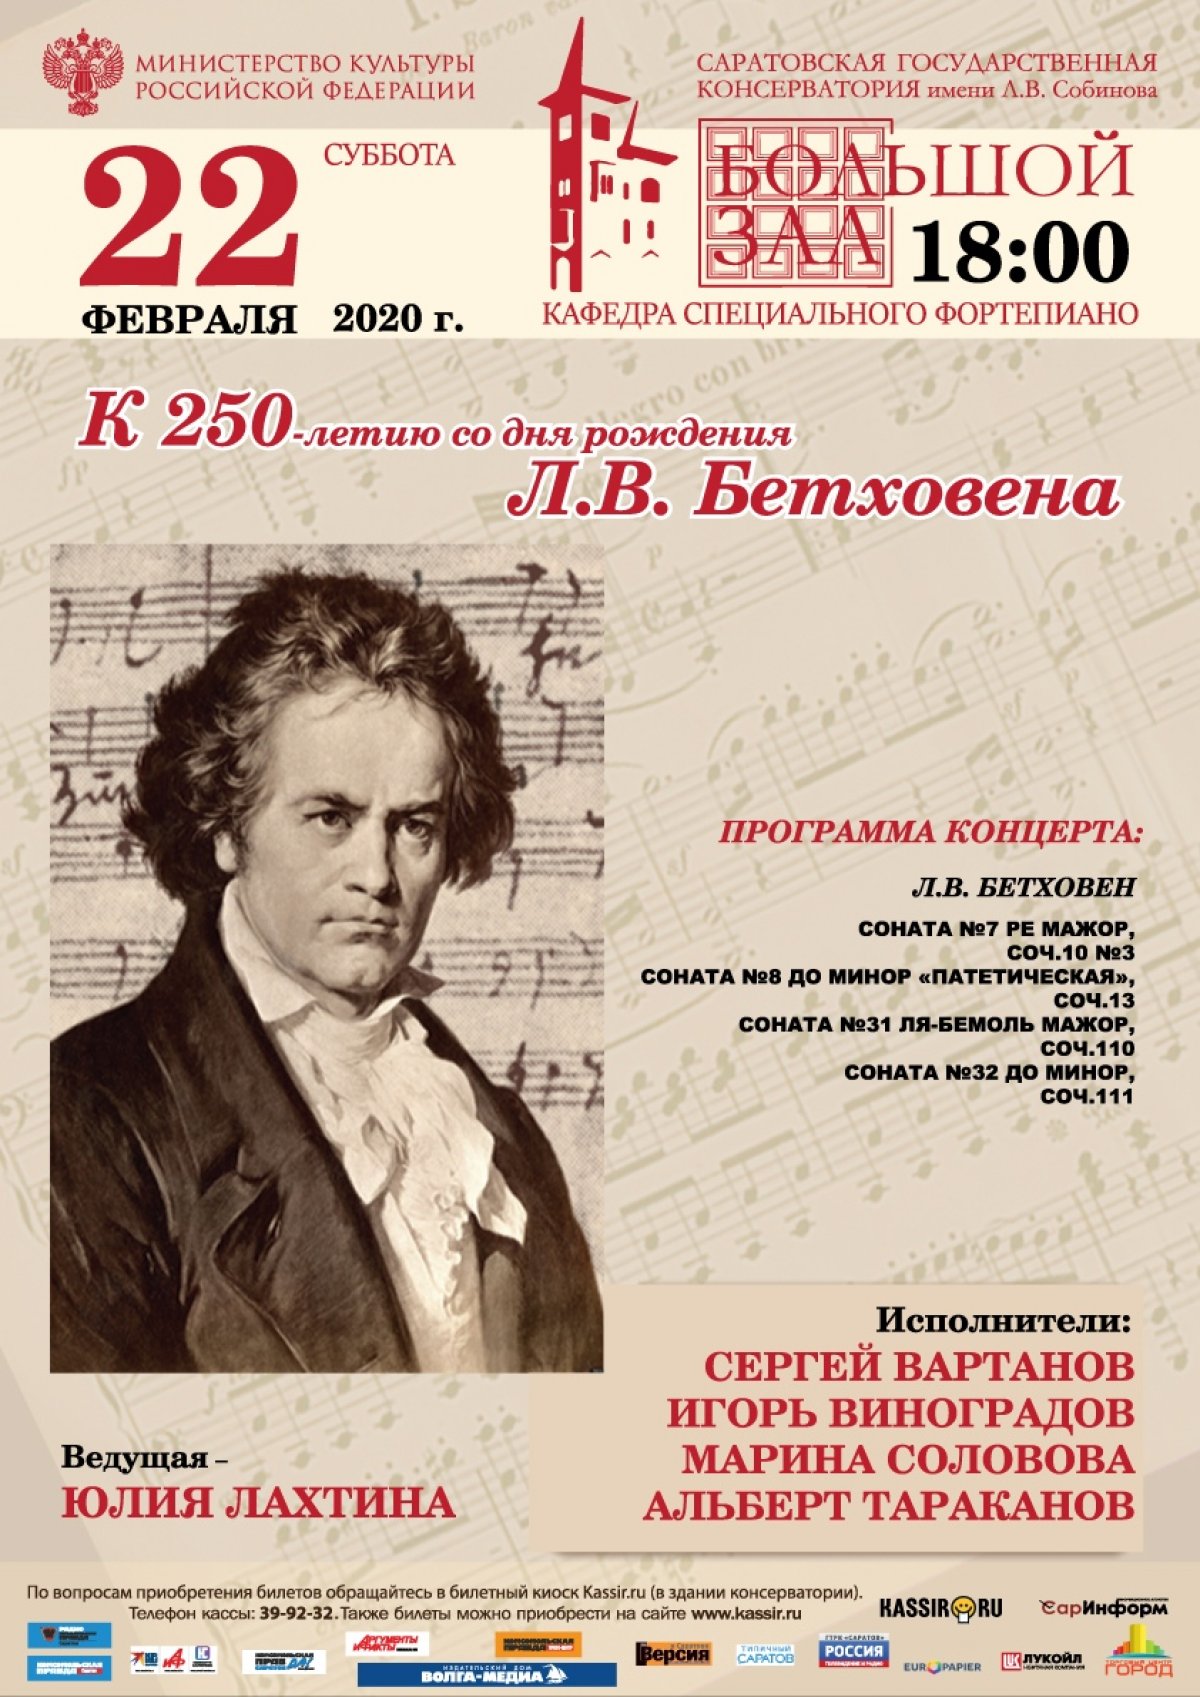 К 250-летию со дня рождения великого композитора Л.ван Бетховена консерватория проведёт ряд концертов, где прозвучат лучшие творения мастера.